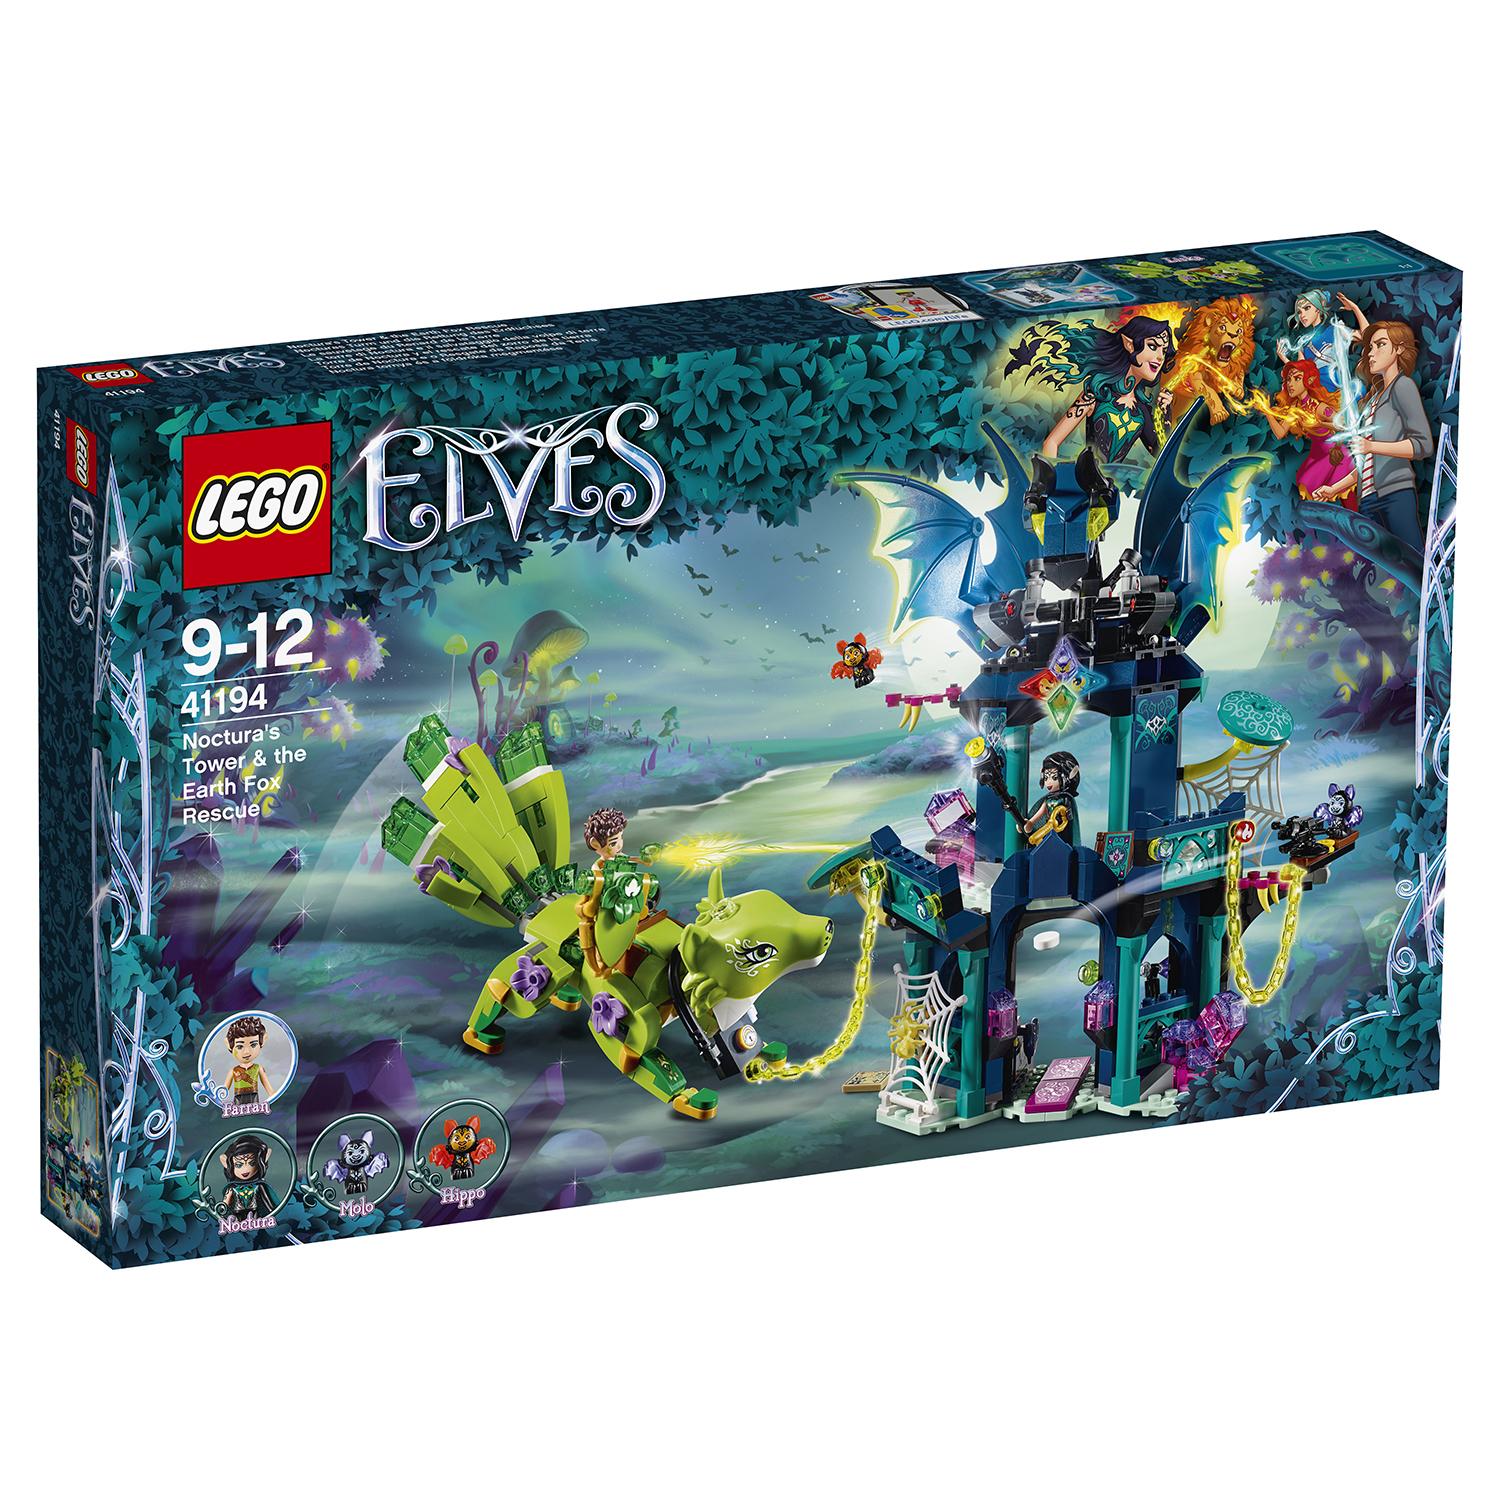 Lego Elves 41194 Побег из башни Ноктур